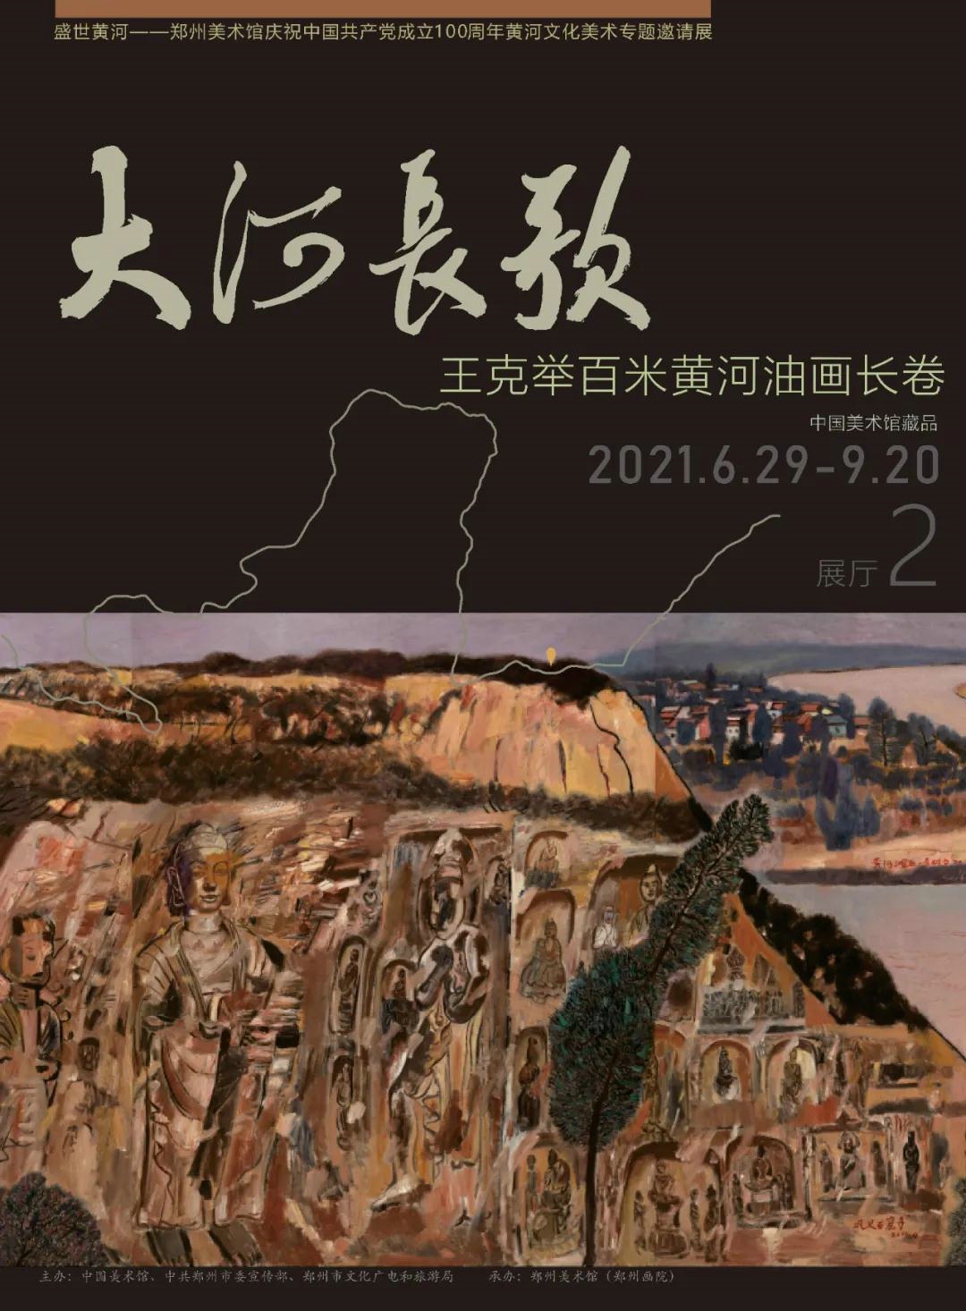 预告 | “大河长歌——王克举百米黄河油画长卷” 作品展即将开幕